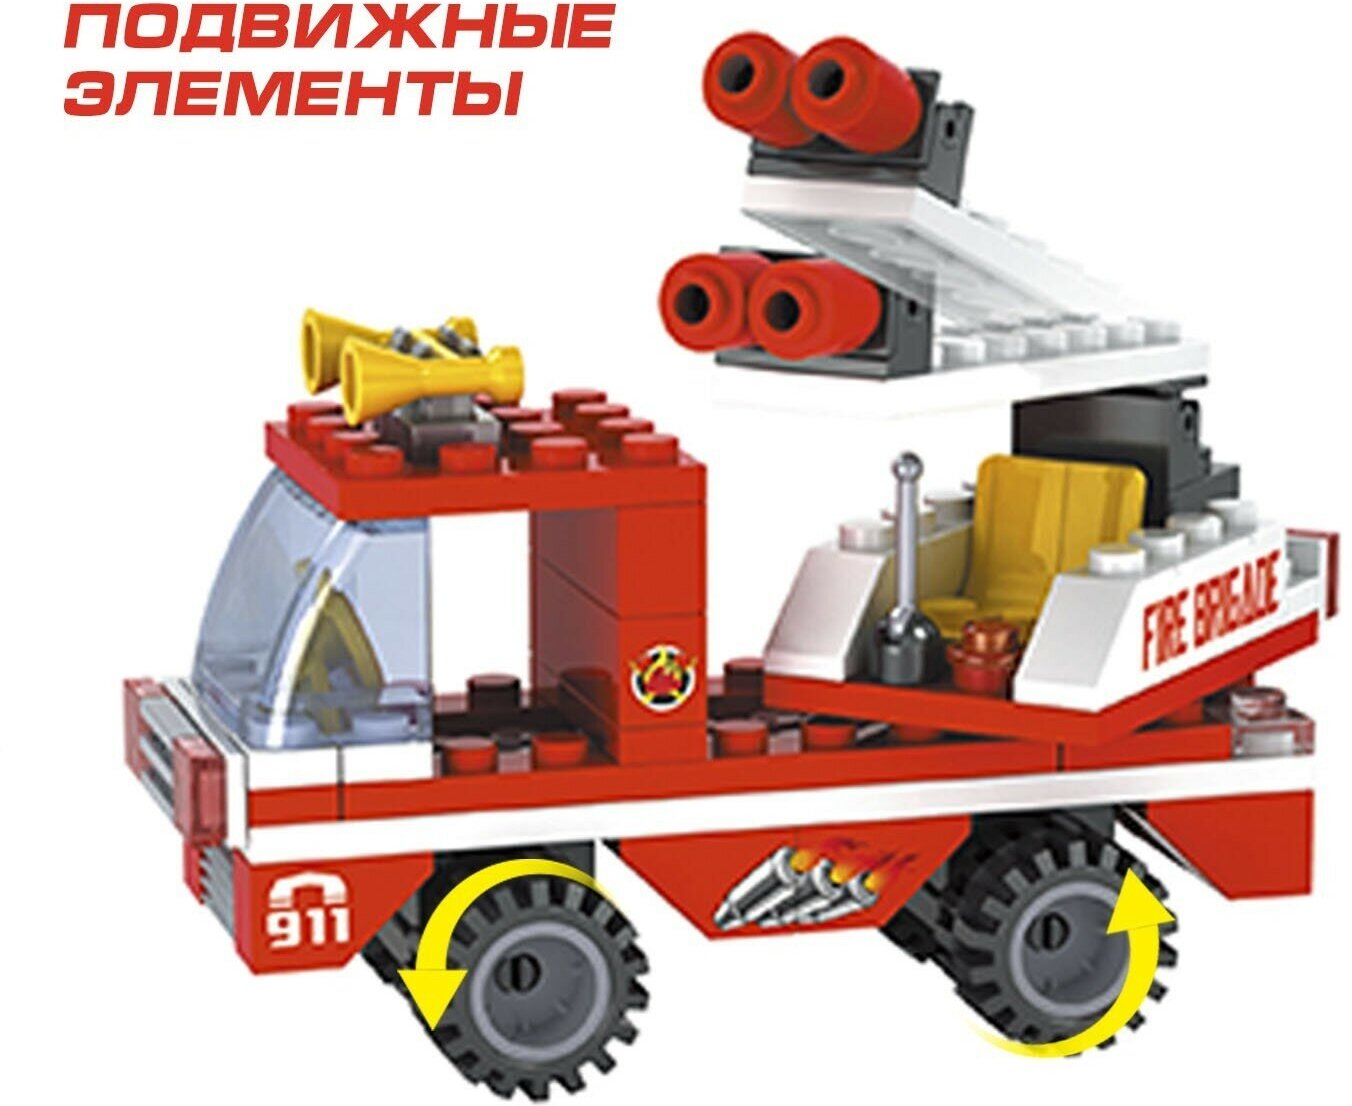 Детский конструктор "Пожарная бригада", 137 детали, совместим с лего